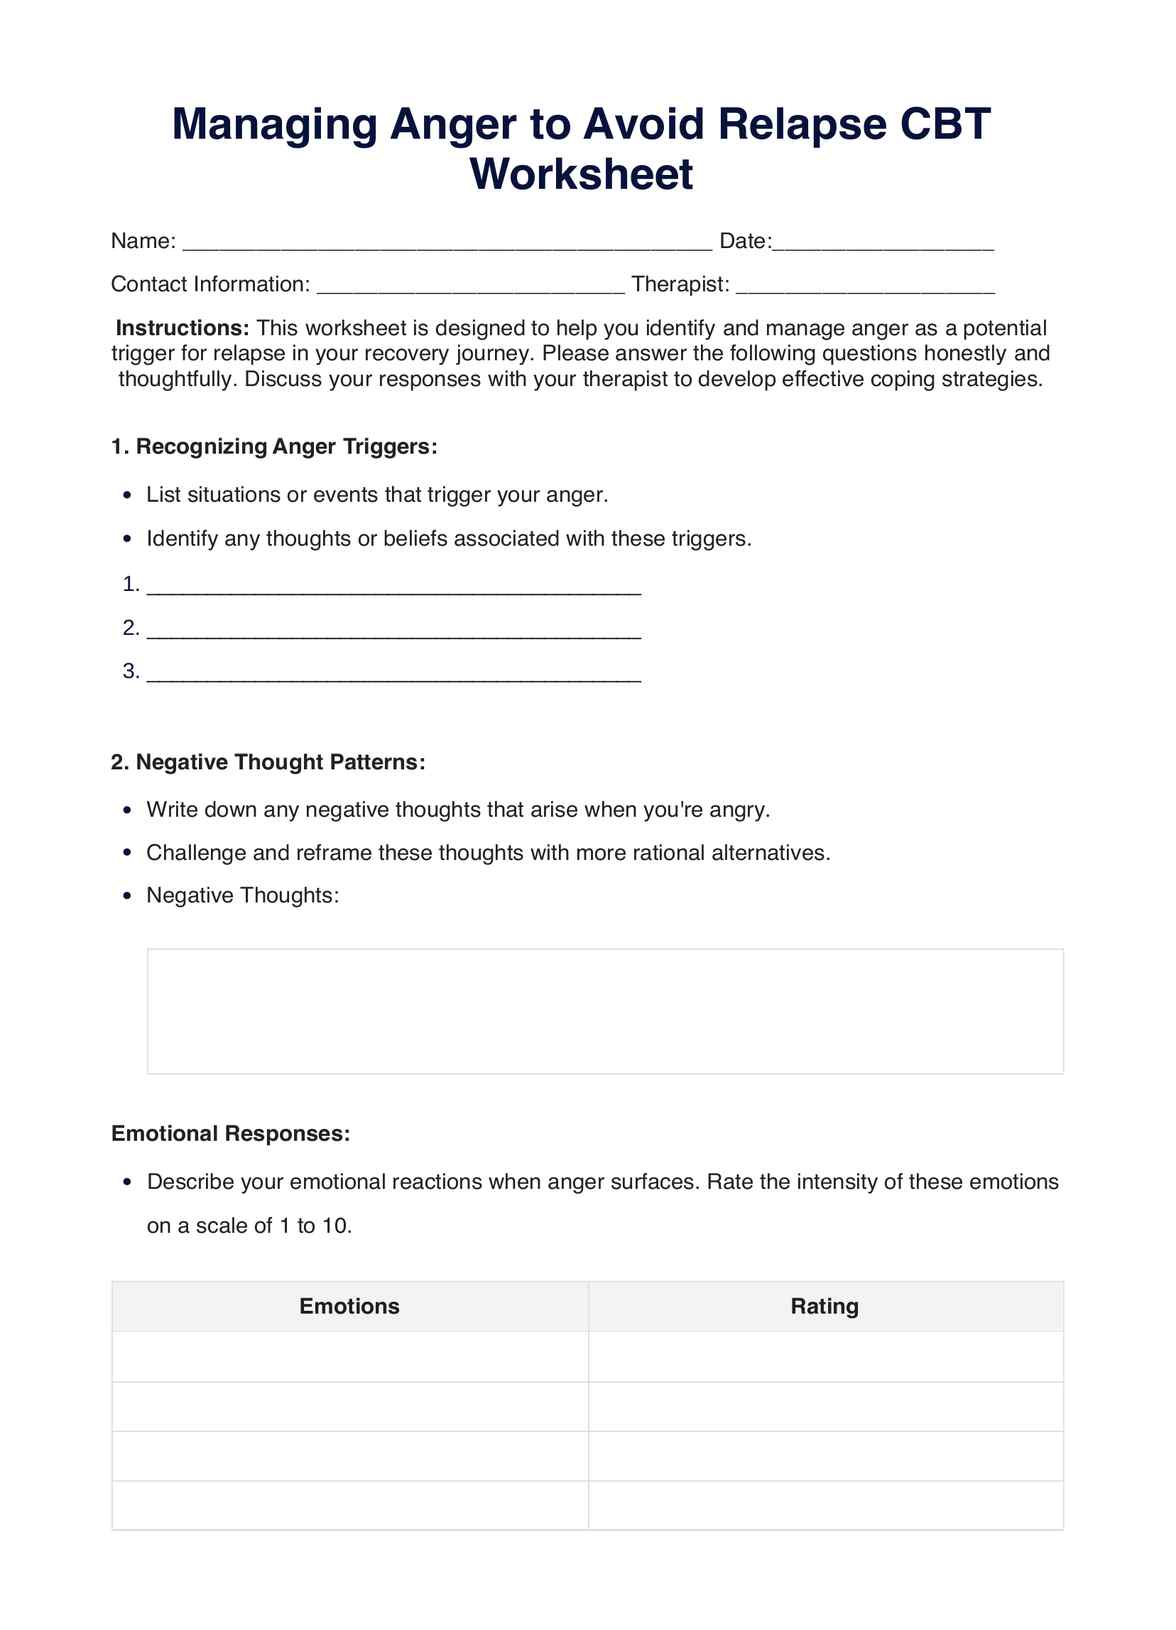 Managing Anger to Avoid Relapse CBT Worksheet PDF Example